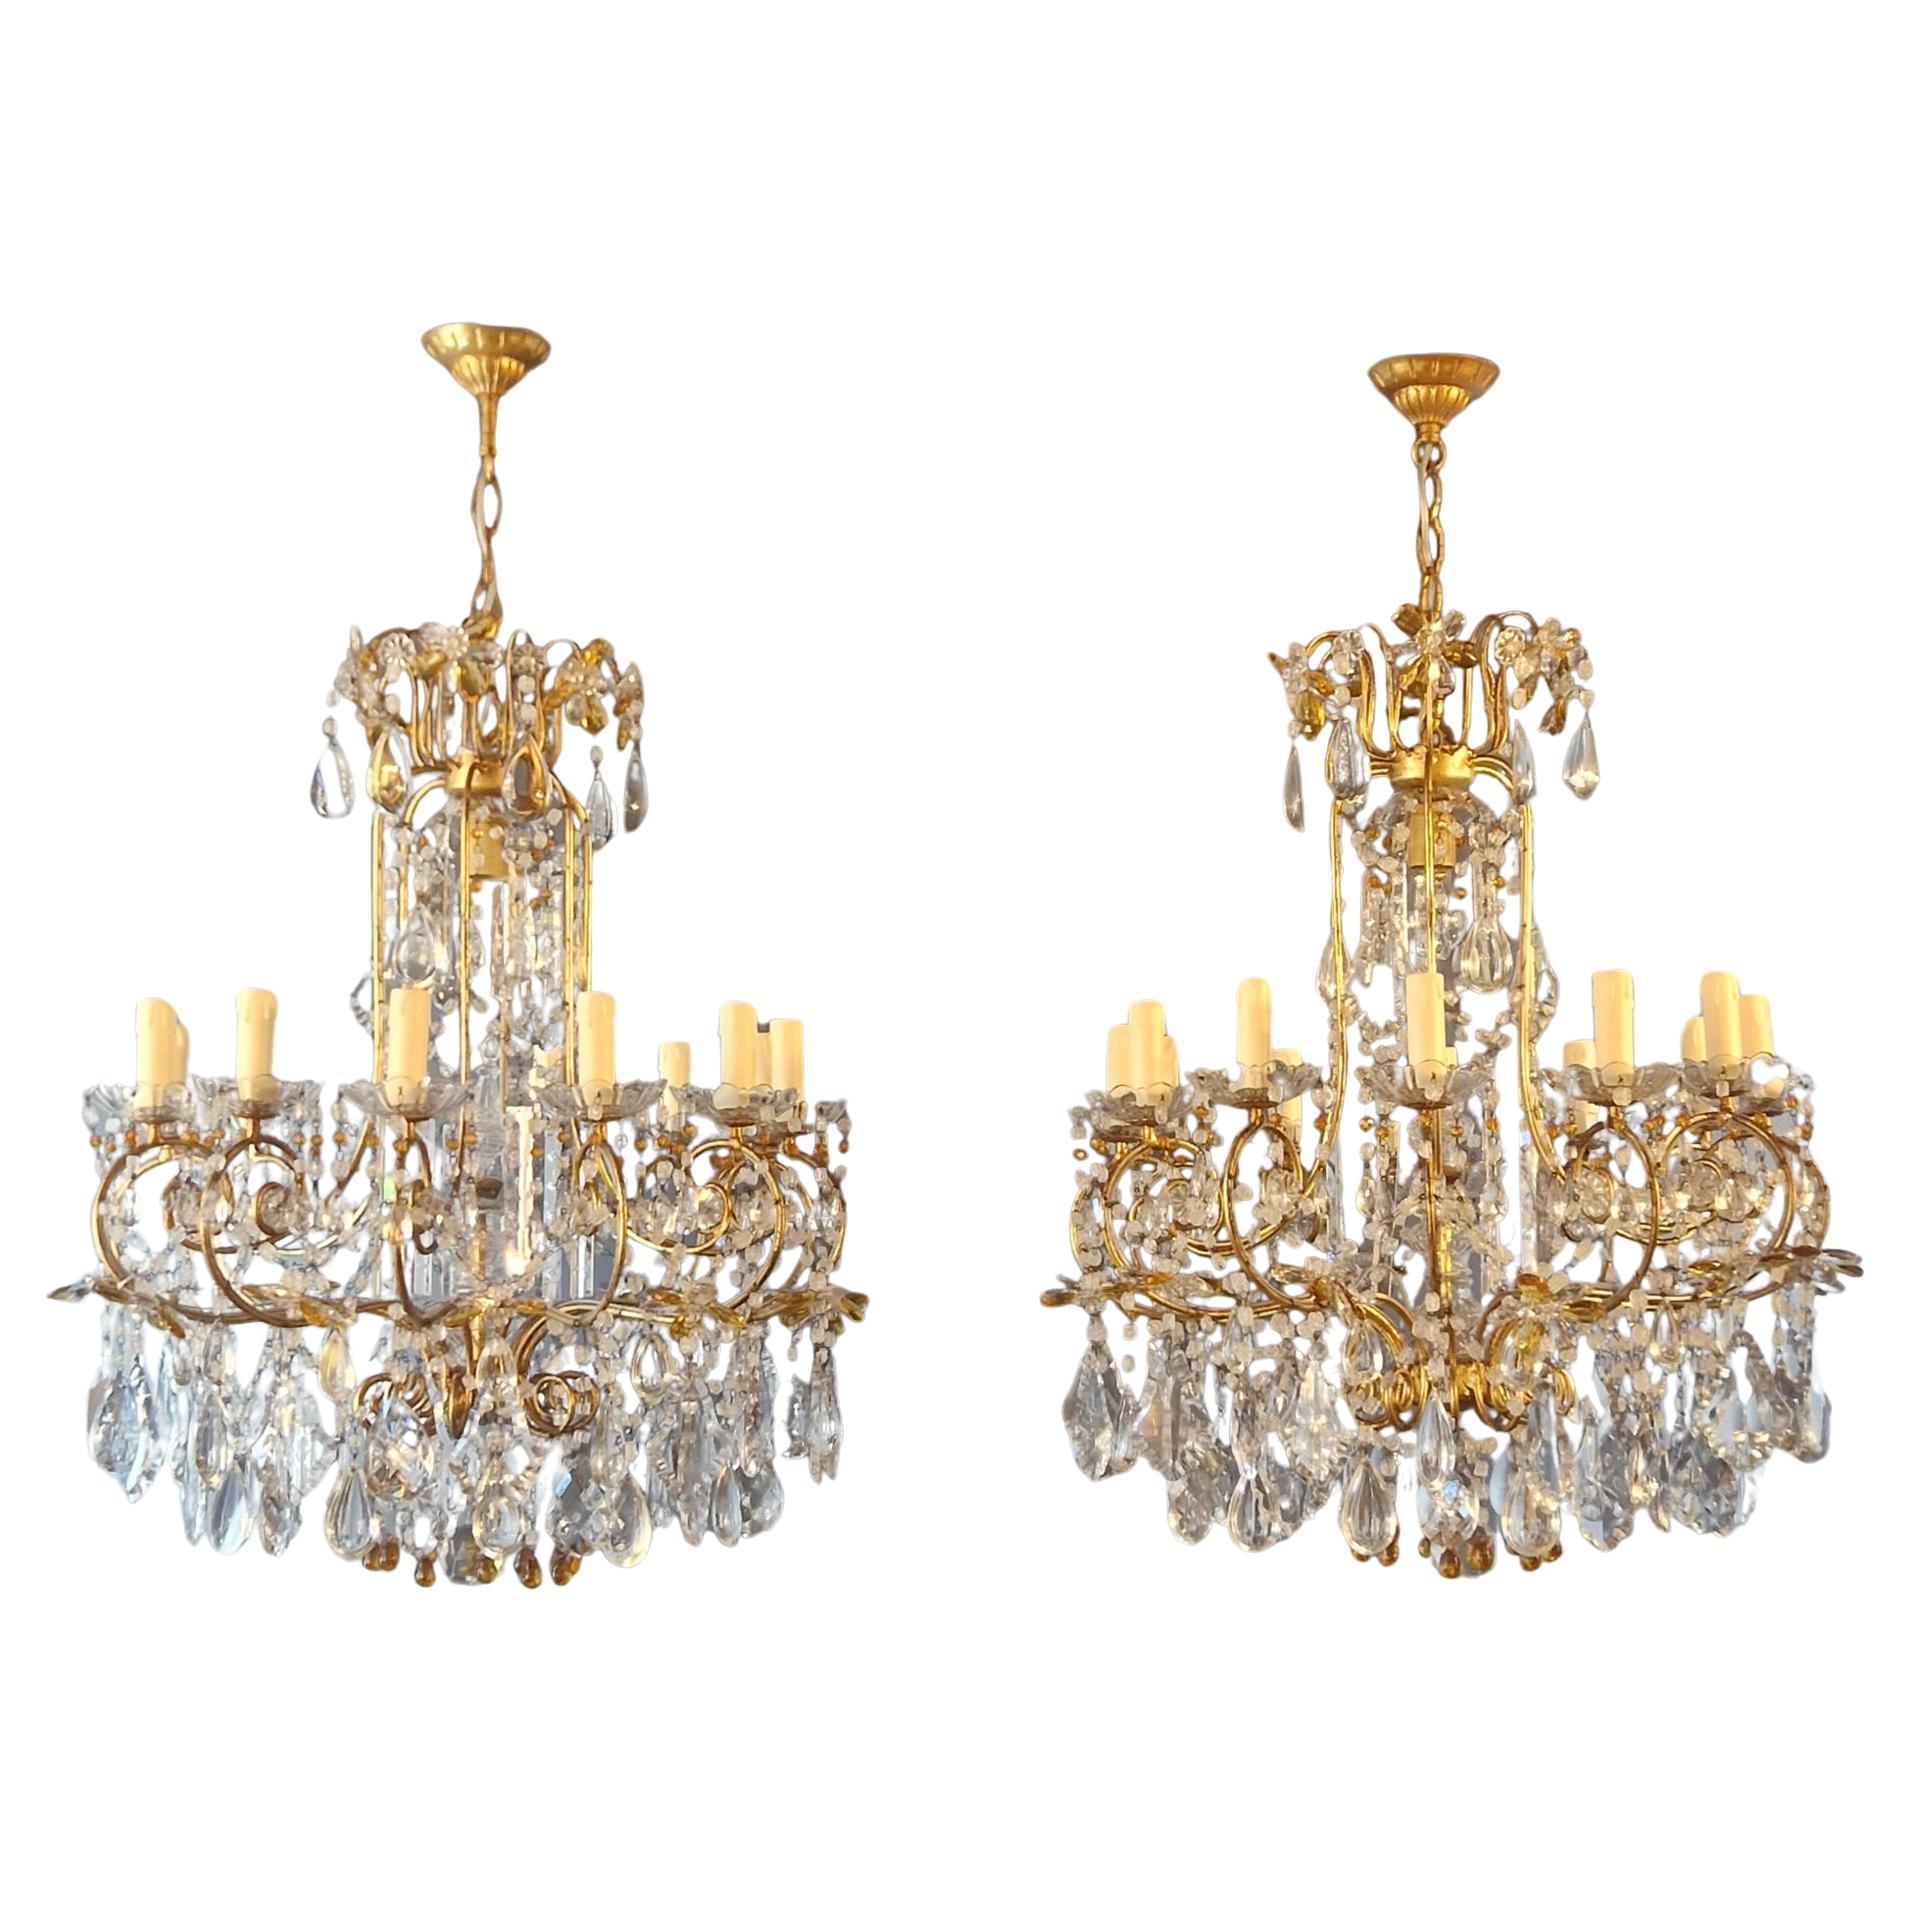 Pair of Antique Crystal Chandelier Ceiling Lamp Amber Lustre Art Nouveau